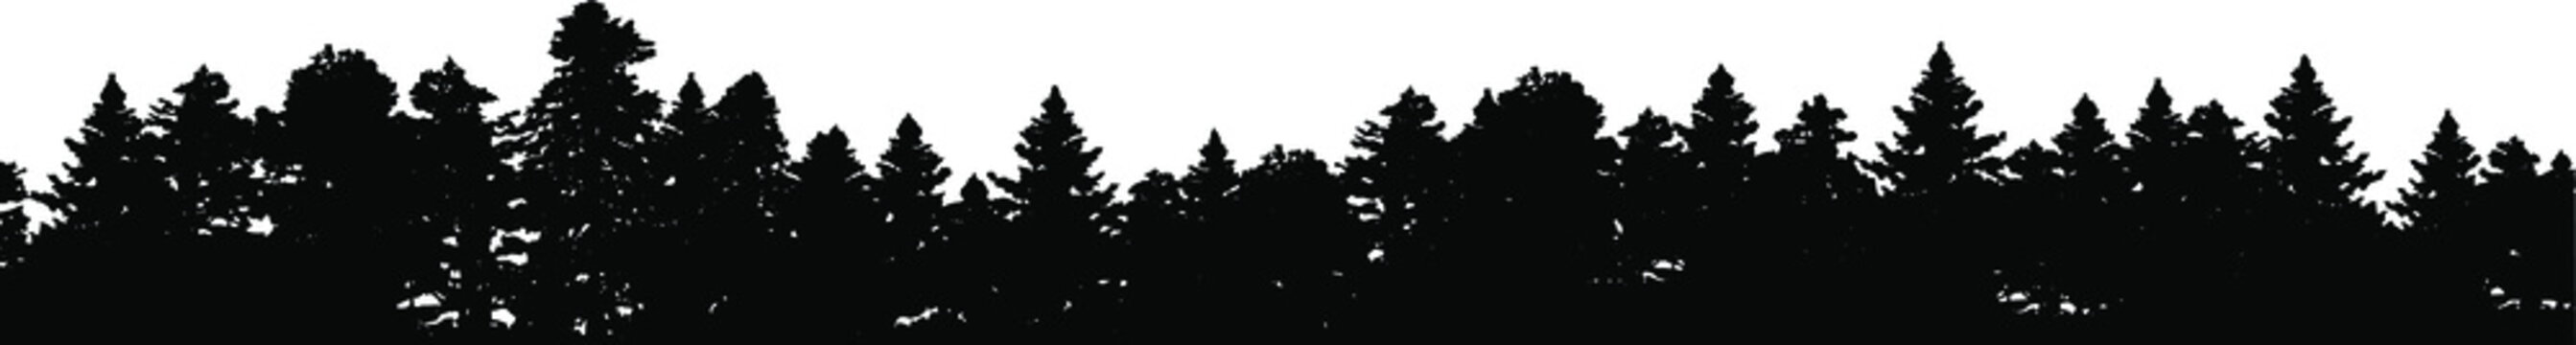 Forest silhouette - border, vector EPS 10 illustration.